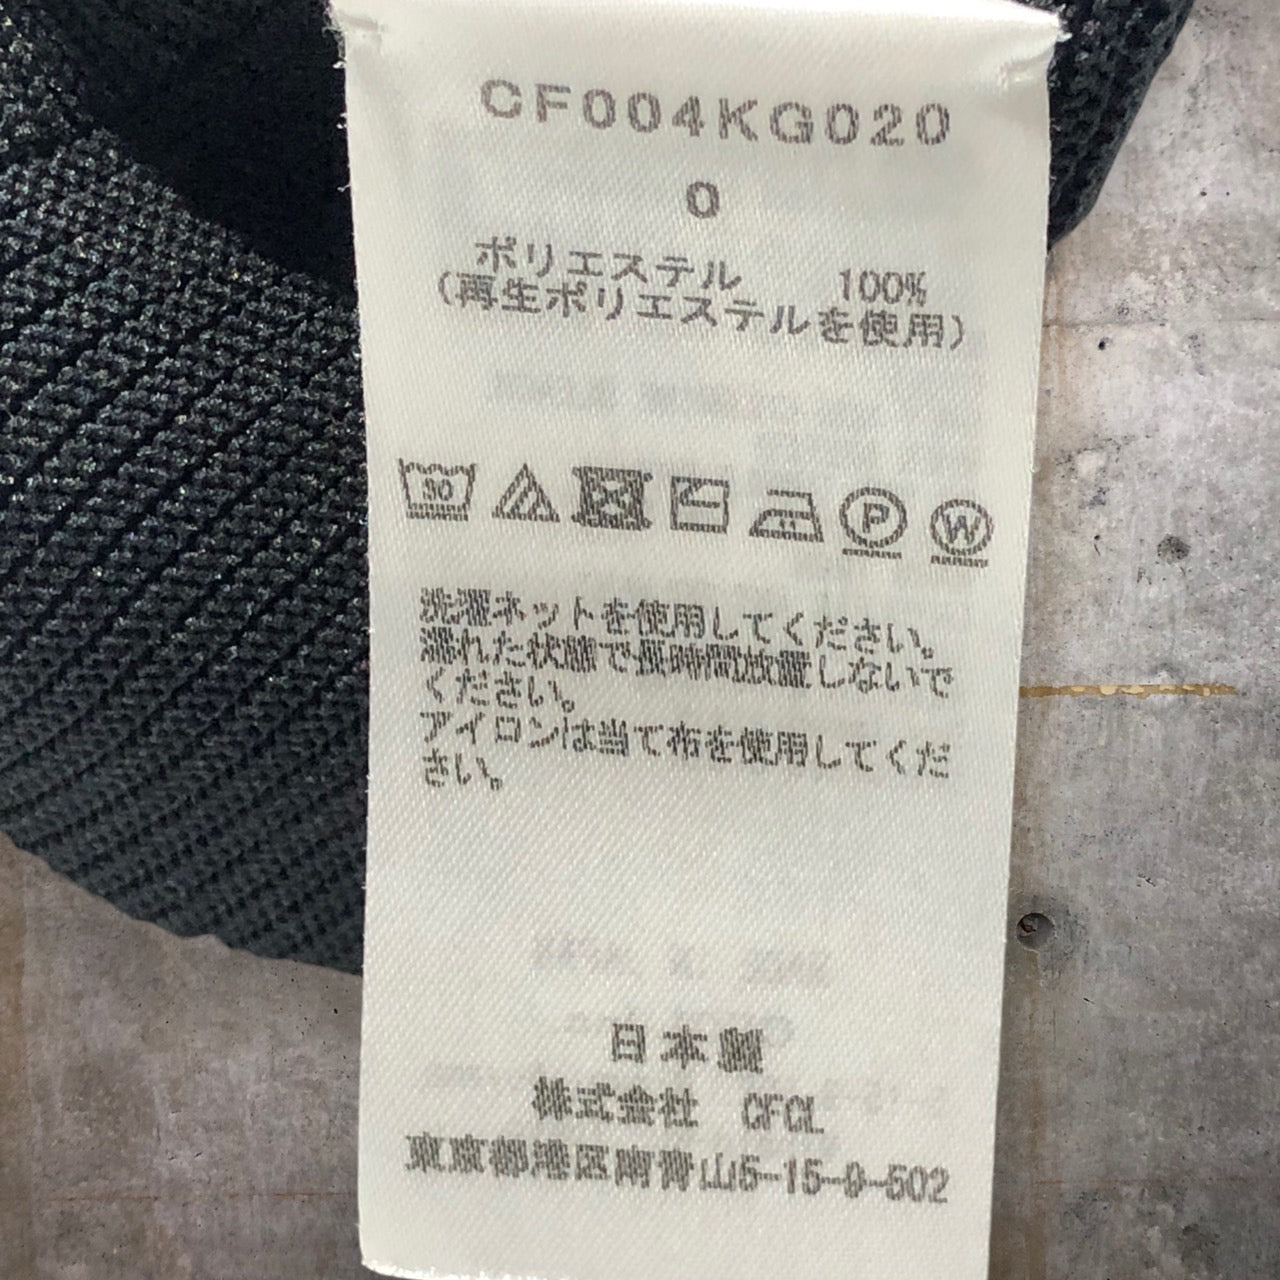 CFCL(シーエフシーエル) POTTERY SKIRT １/スカート CF004KG020 0(SXサイズ程度) ブラック